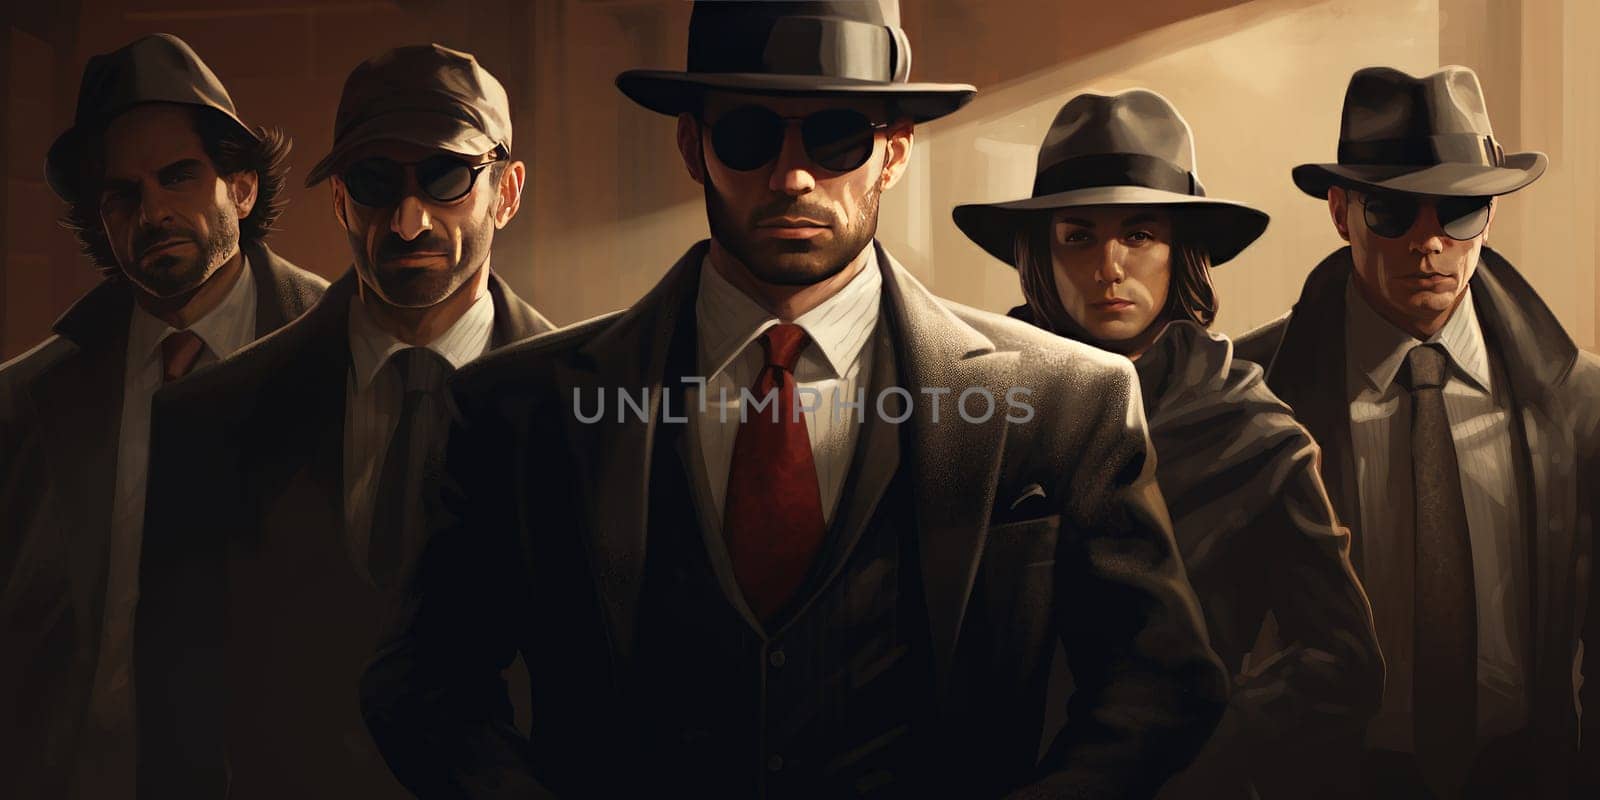 A mafia group gang rebels